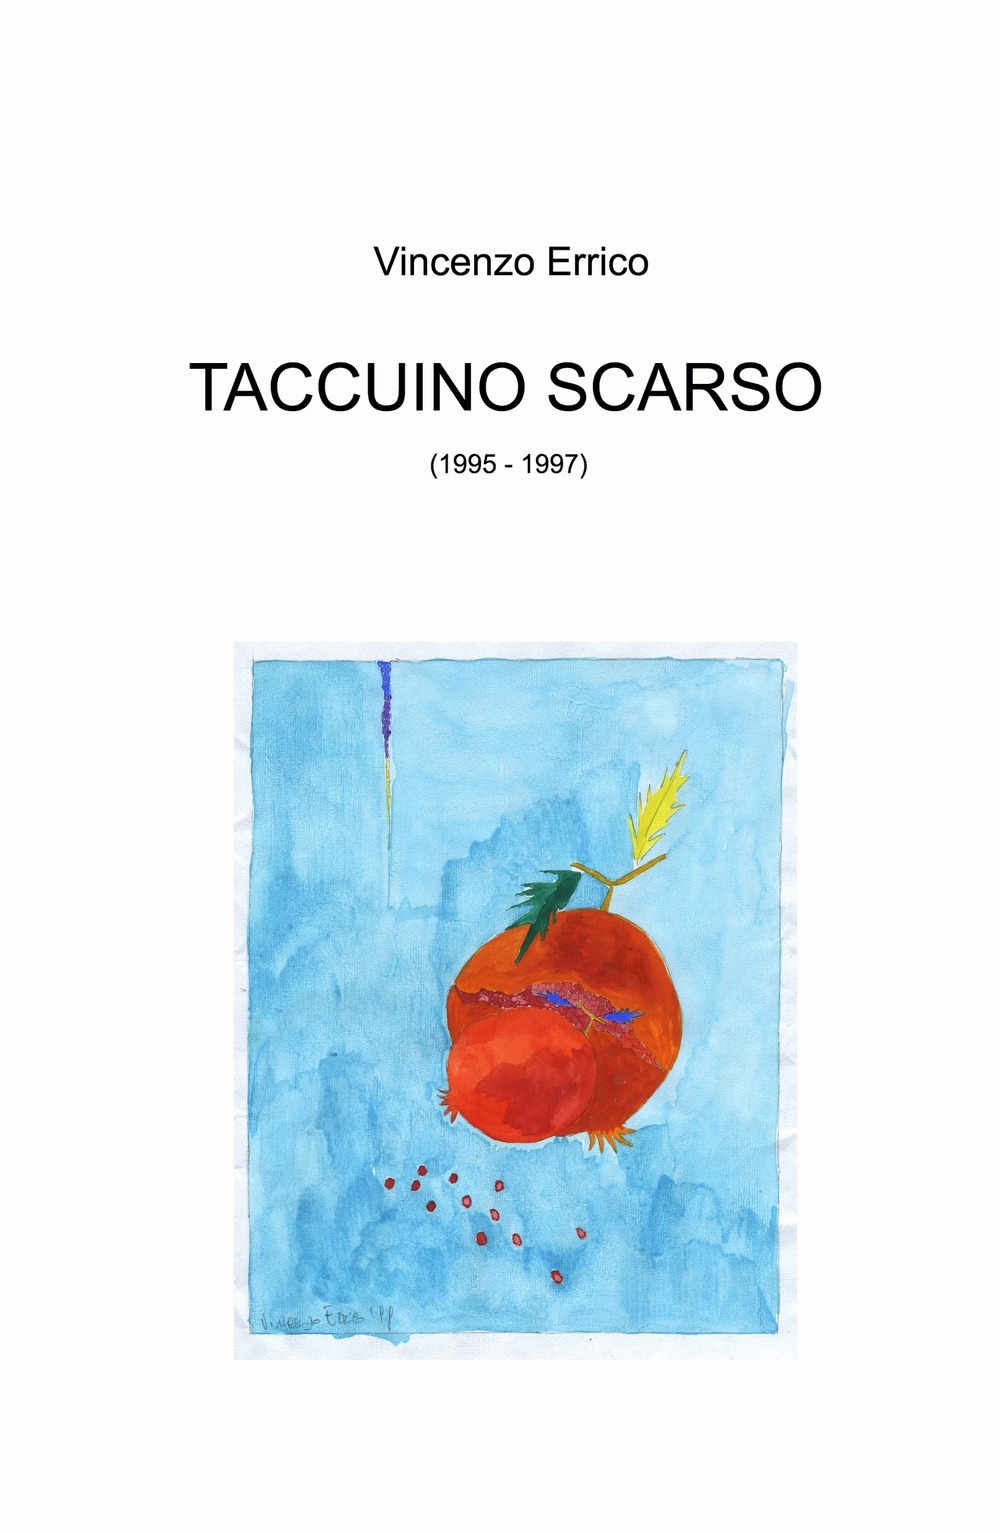 Taccuino scarso (1995 - 1997)